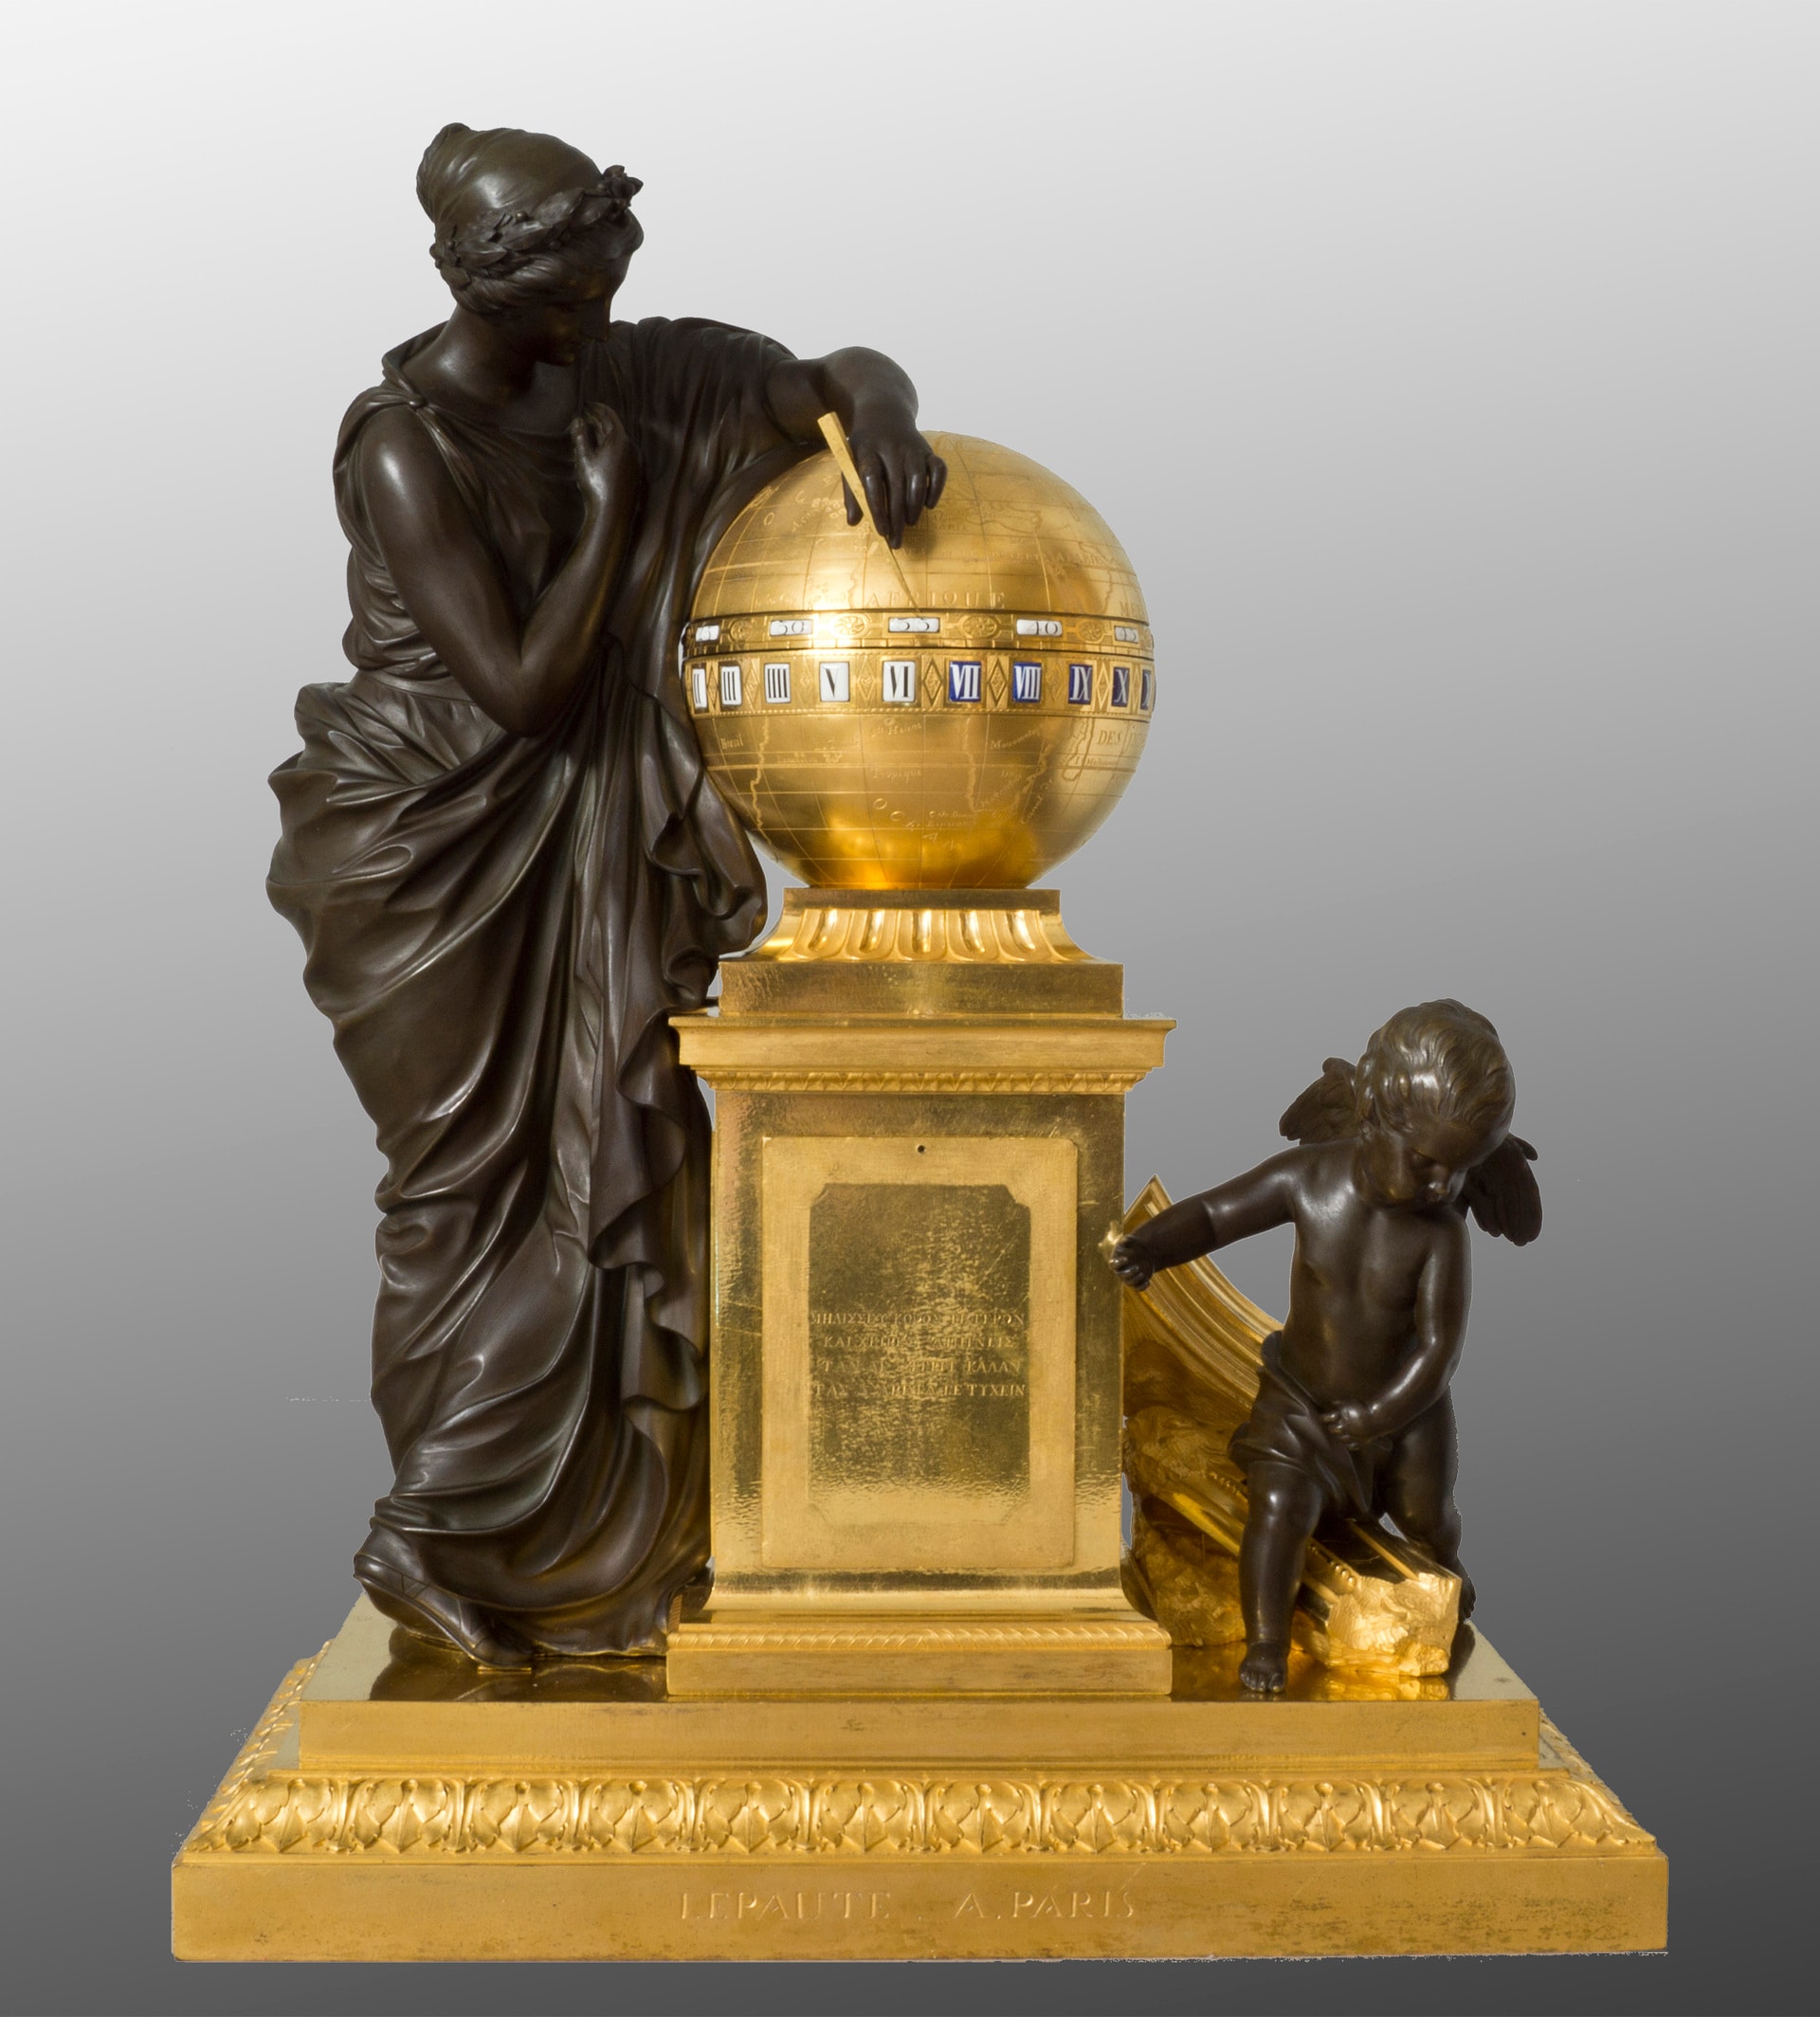 Urania con genio alato, Manifattura Lepaute, 1776, bronzo, bronzo dorato, smalto, 60 x 50 x 26 cm, Firenze, Villa medicea della Petraia